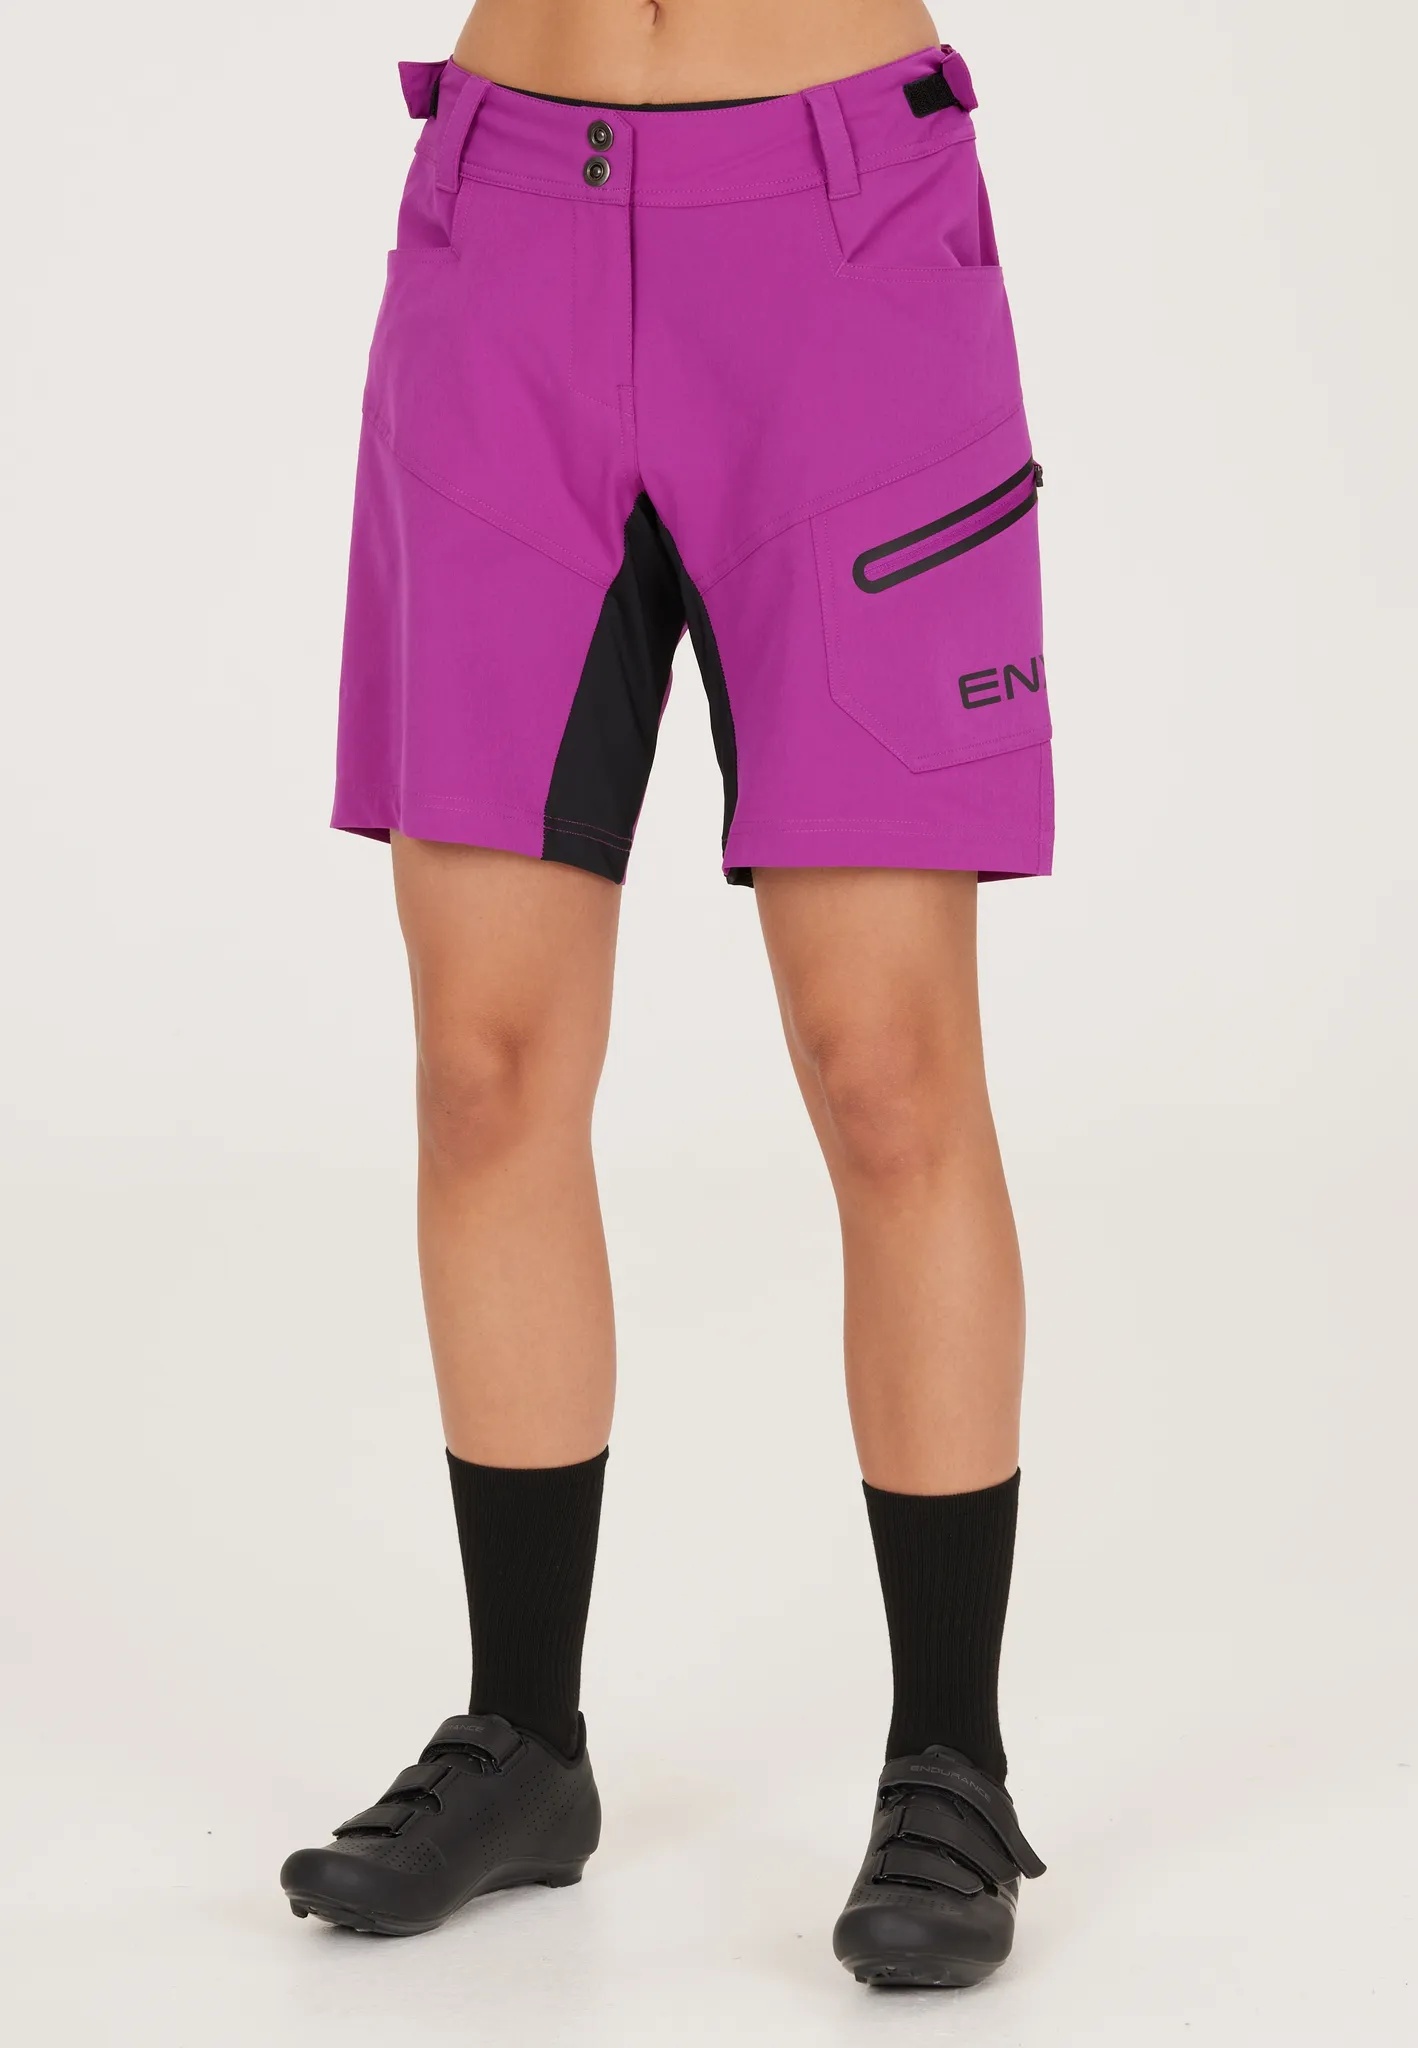 Radhose ENDURANCE "Jamilla W 2 in 1 Shorts" Gr. 38, EURO-Größen, lila Damen Hosen Sporthosen mit herausnehmbarer Innen-Tights